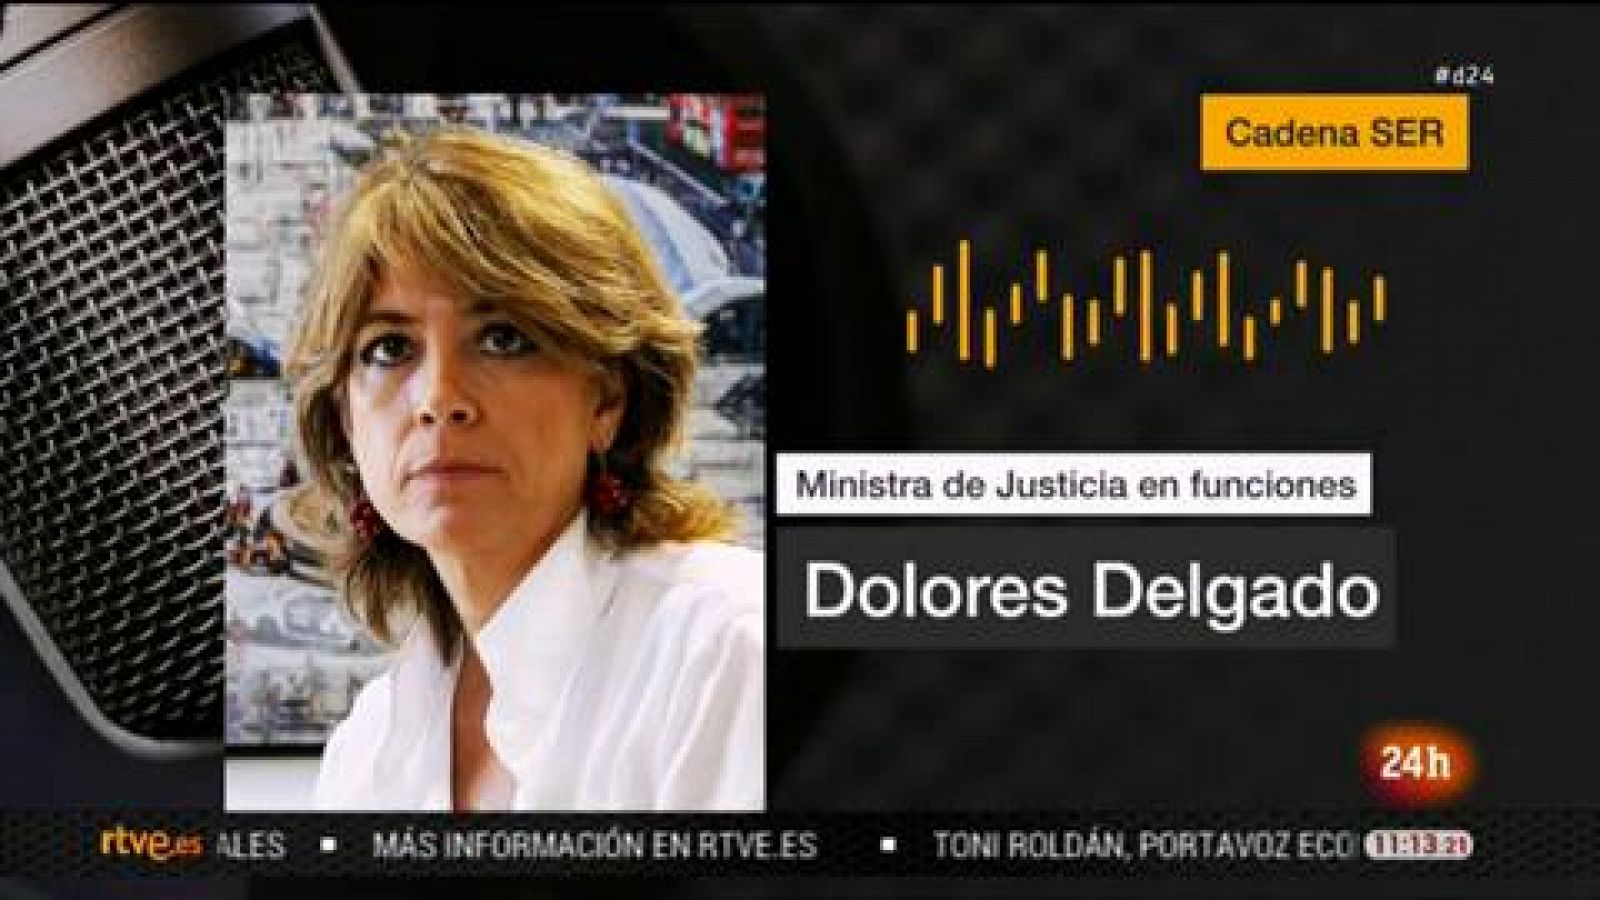 Dolores Delgado, a Vox: "Se puede hacer la más dura crítica política sin insultos" - RTVE.es